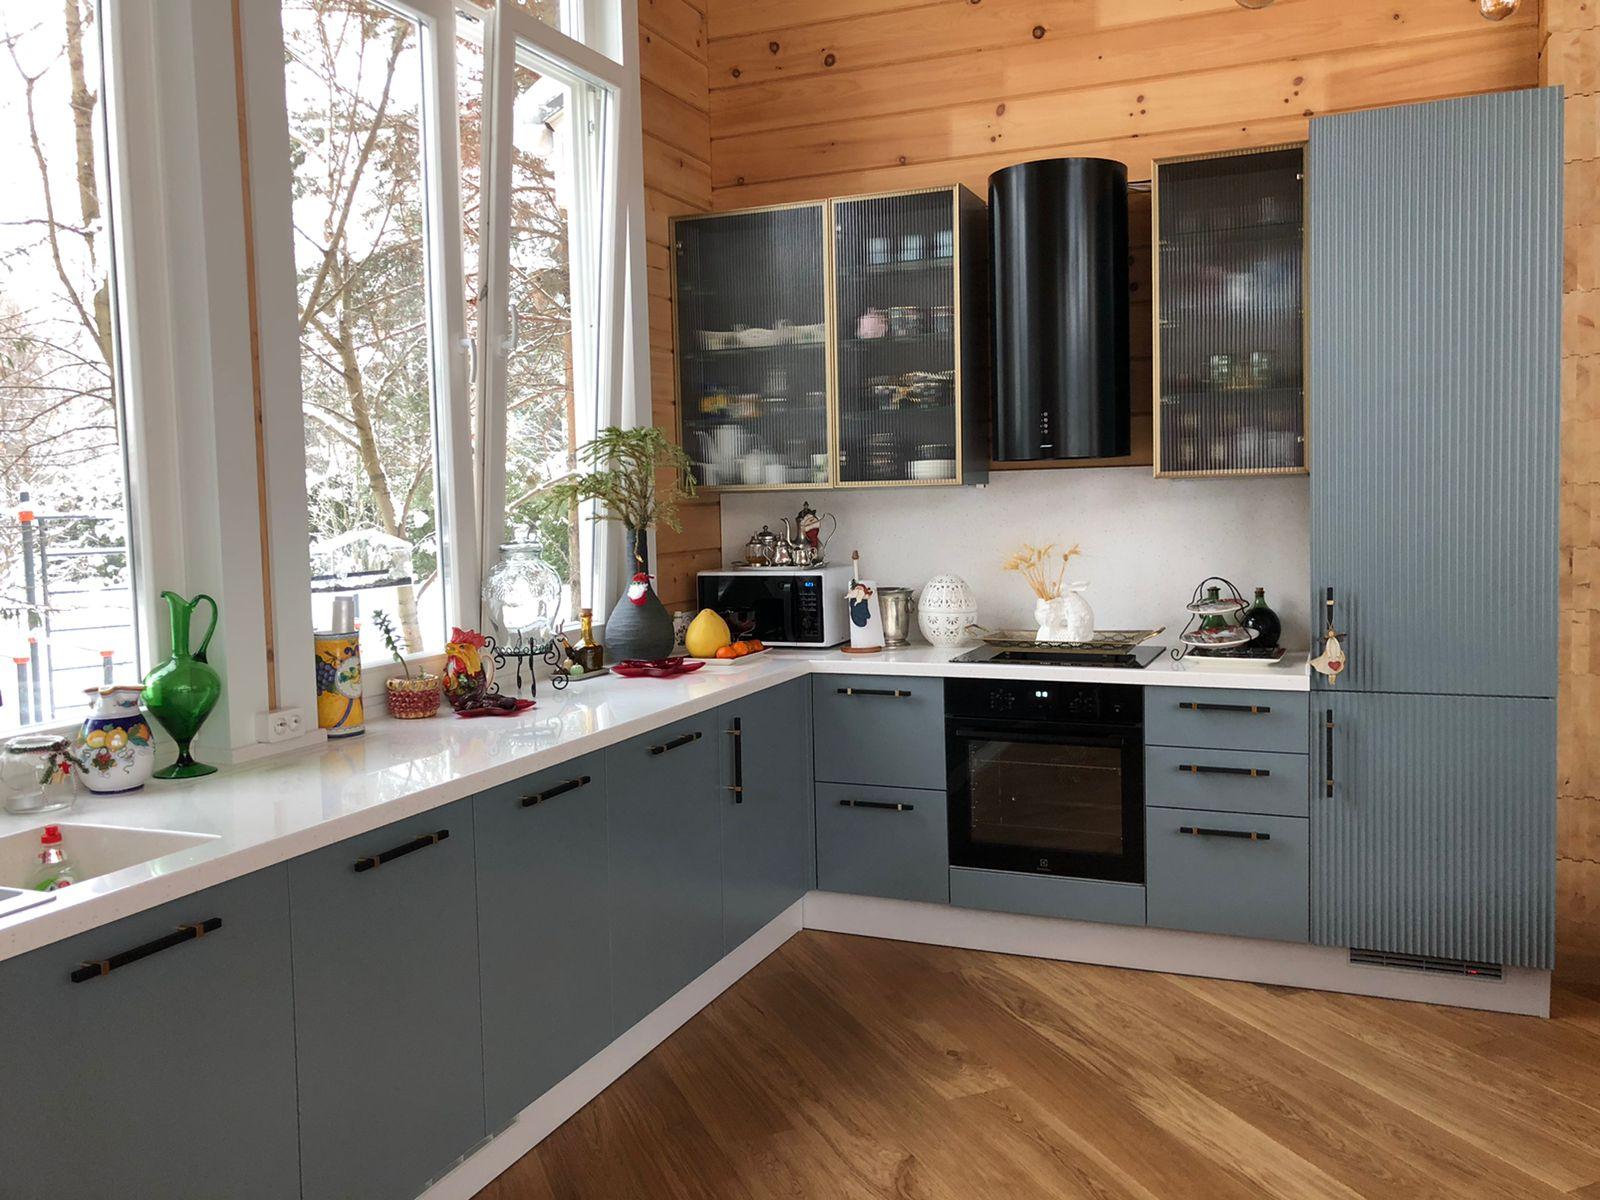 Что учитывать при планировании интерьера кухни в деревянном доме из бруса